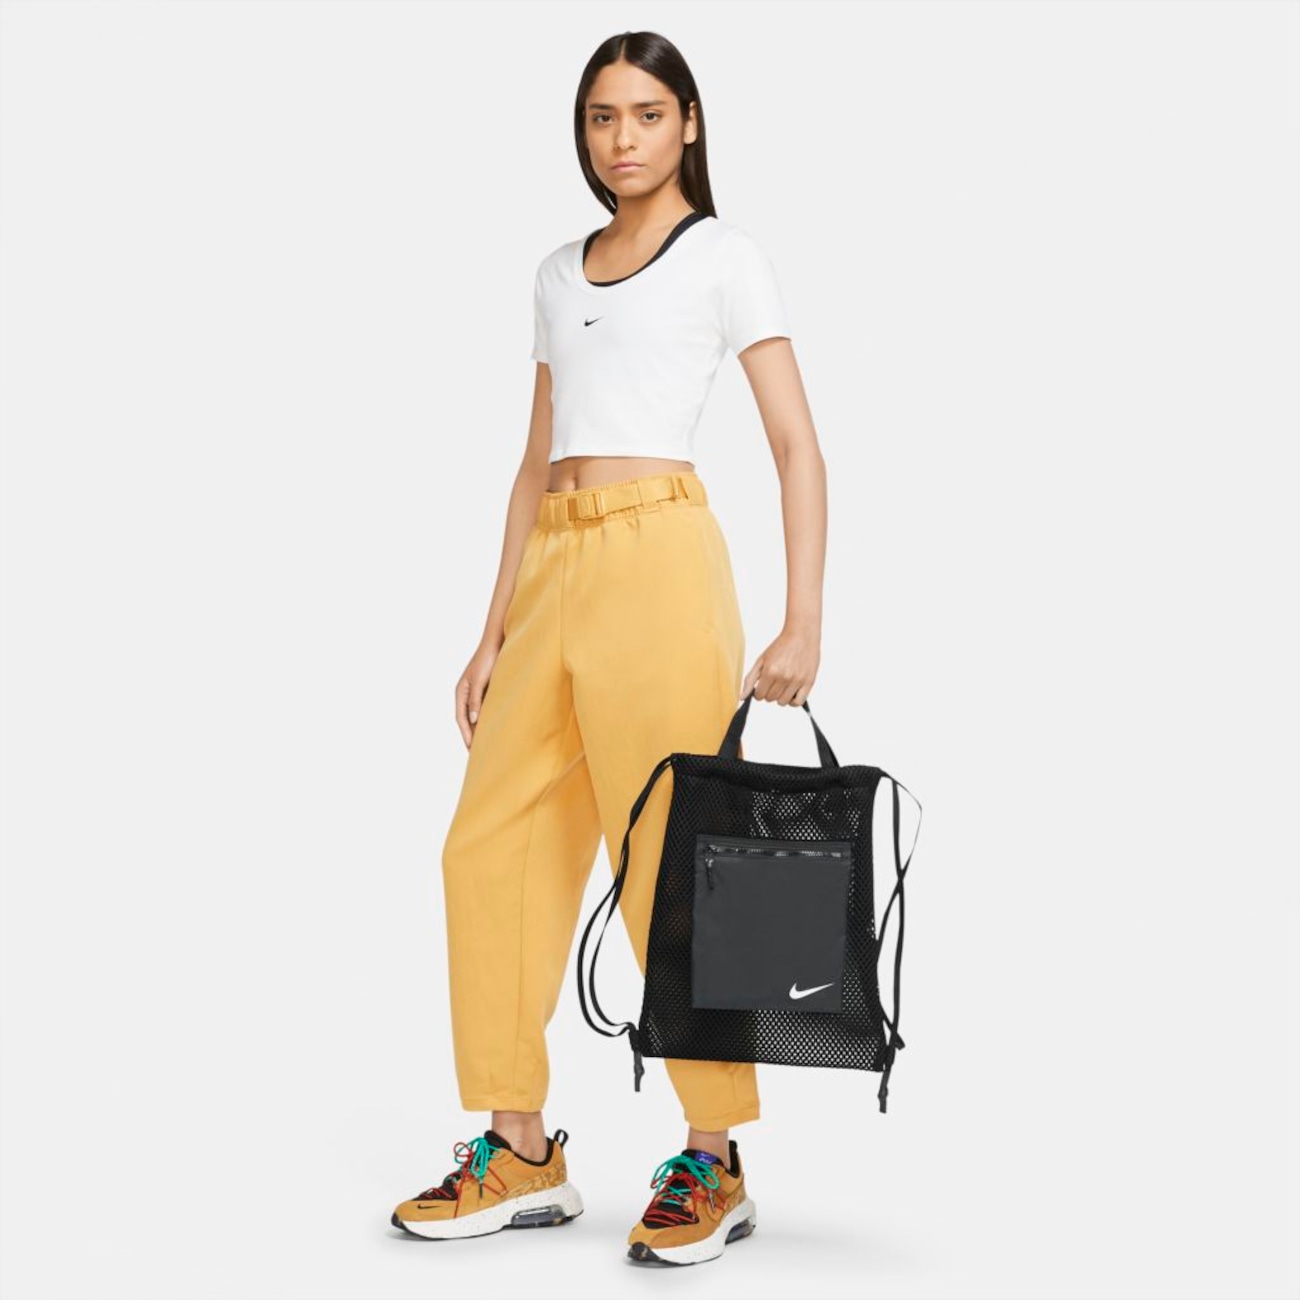 Sacola Nike Sportswear Essentials Unissex - Foto 7